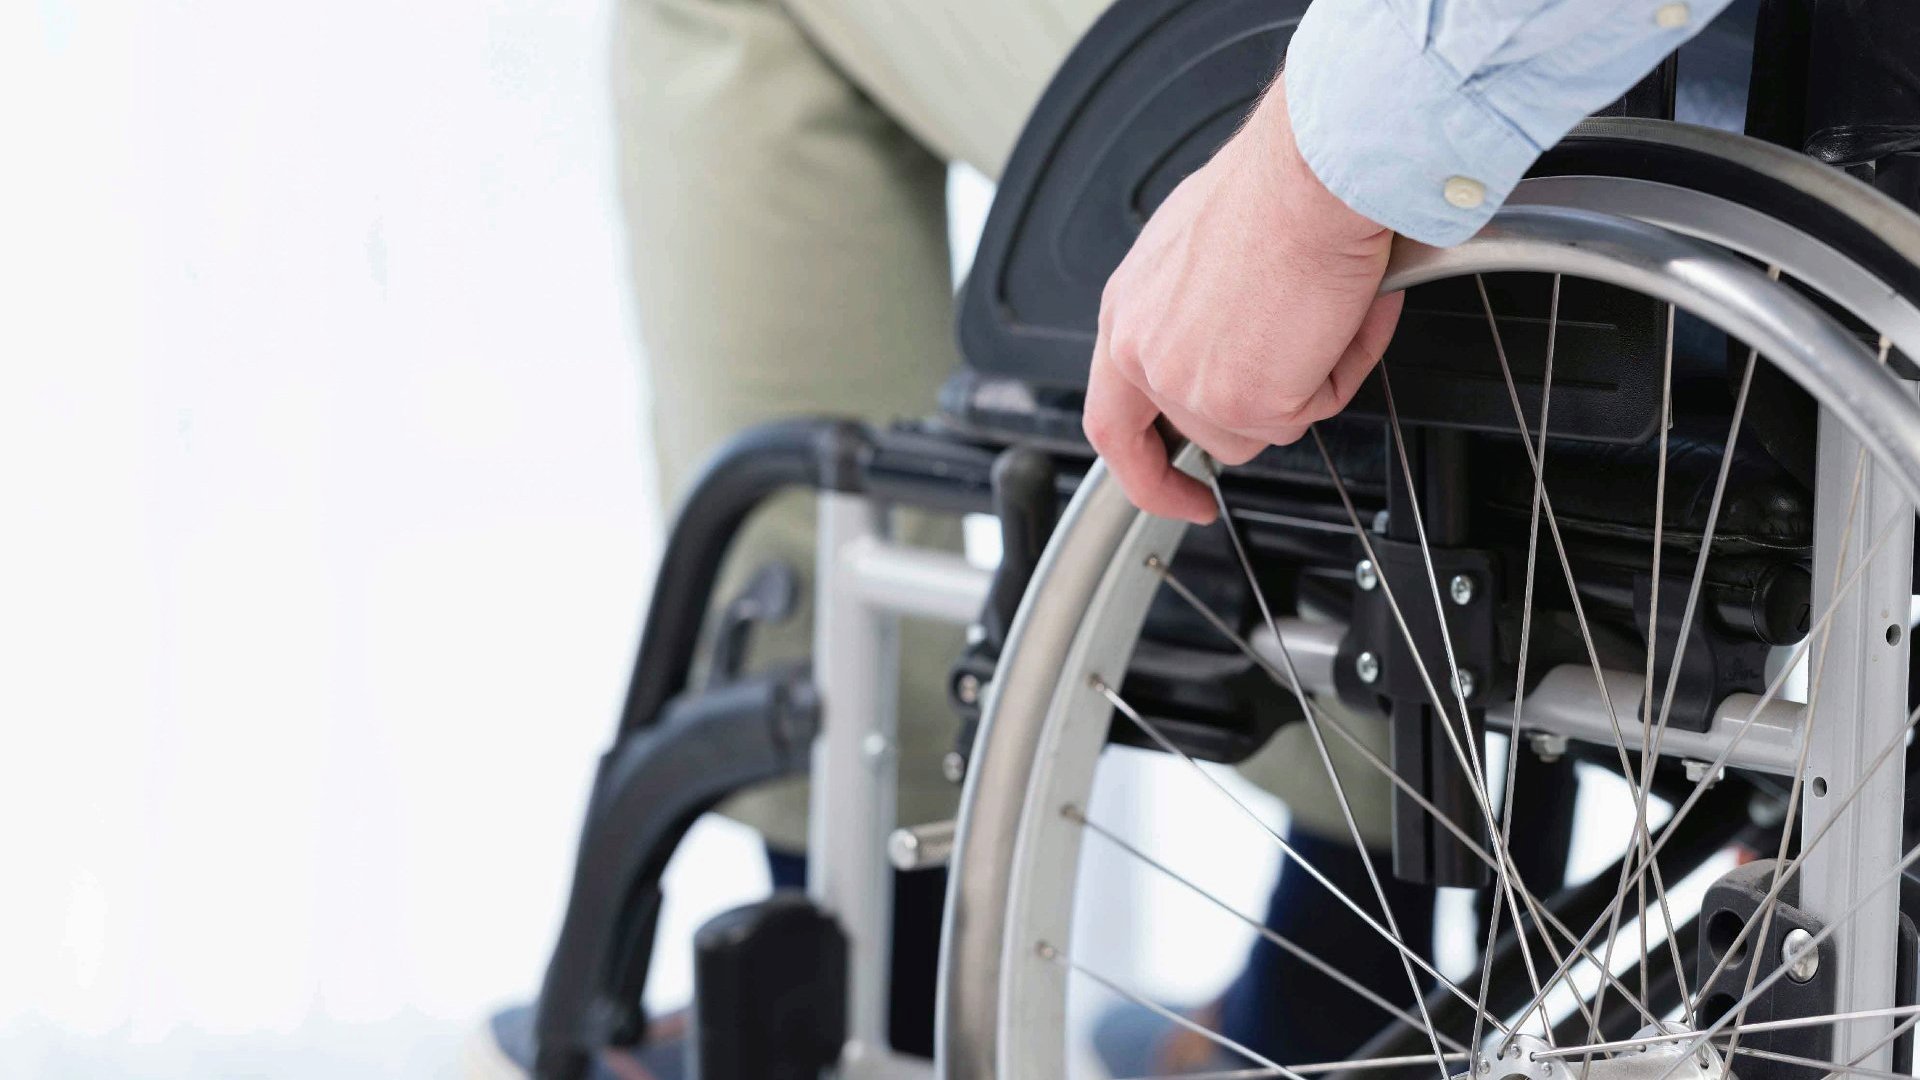 Na zdjęciu mężczyzna siedzący na wózku inwalidzkim, widać tylko dolną część ciała, w centrum dłoń na kole wózka